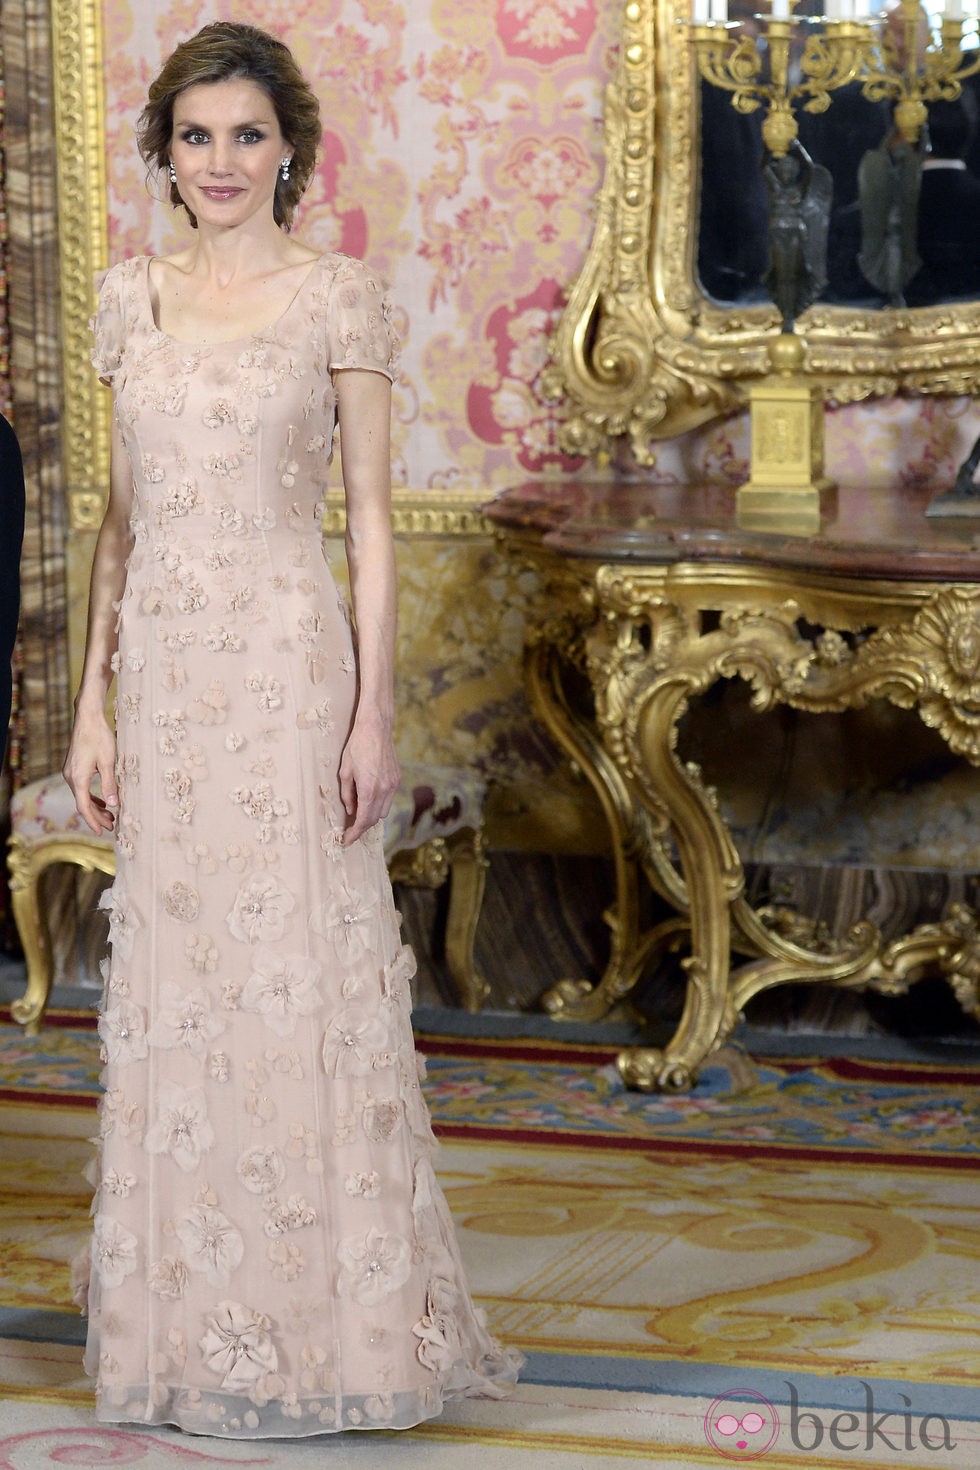 La Princesa Letizia en la cena de gala en honor a Naruhito de Japón